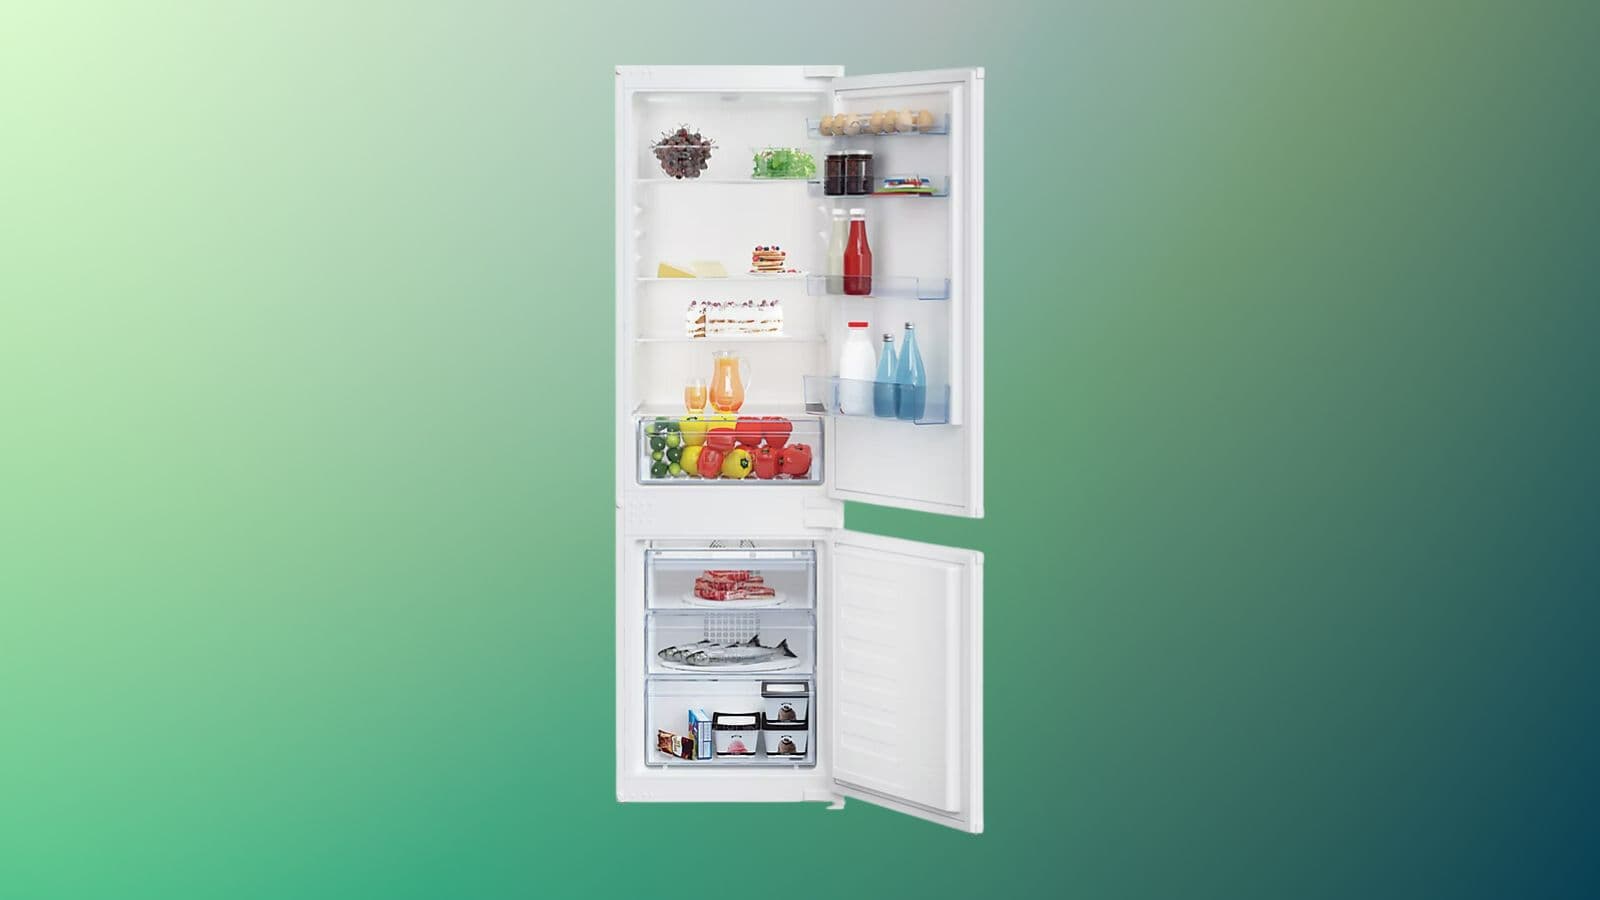 Ce réfrigérateur congélateur Beko est proposé à un prix indécent pendant le  déstockage Castorama